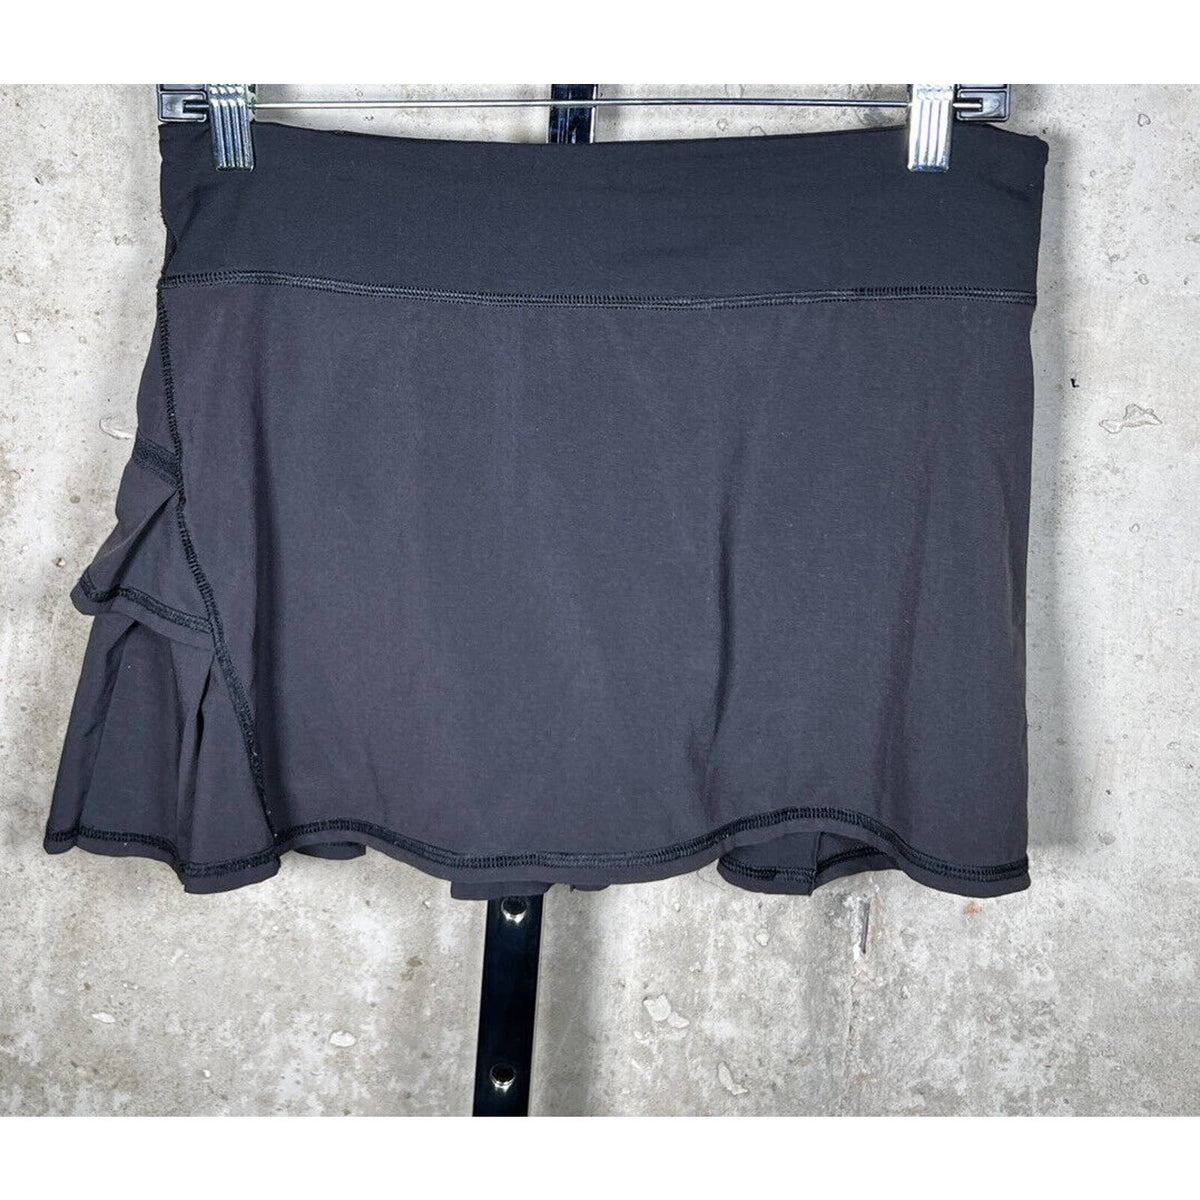 Lululemon Pace Setter Black Skirt Sz.6